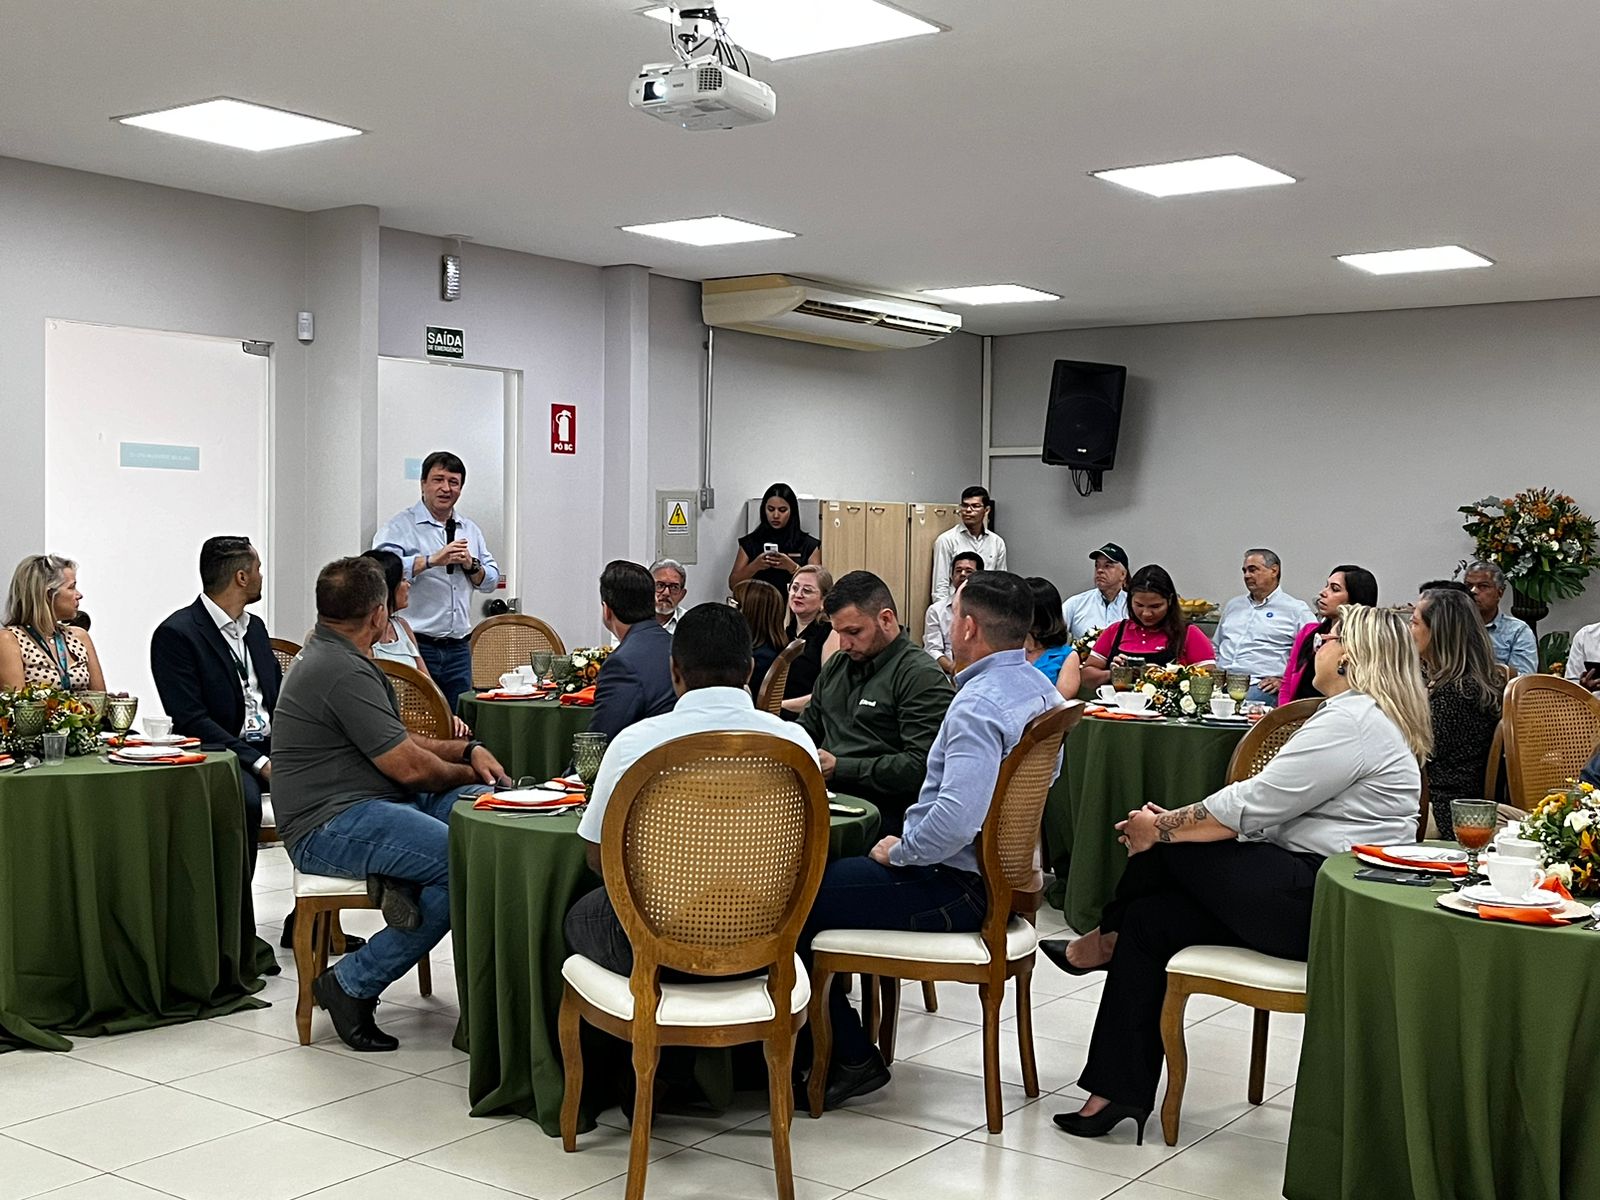 Faciet participa do 1° Café com Negócios promovido pelo Sistema OCB Tocantins